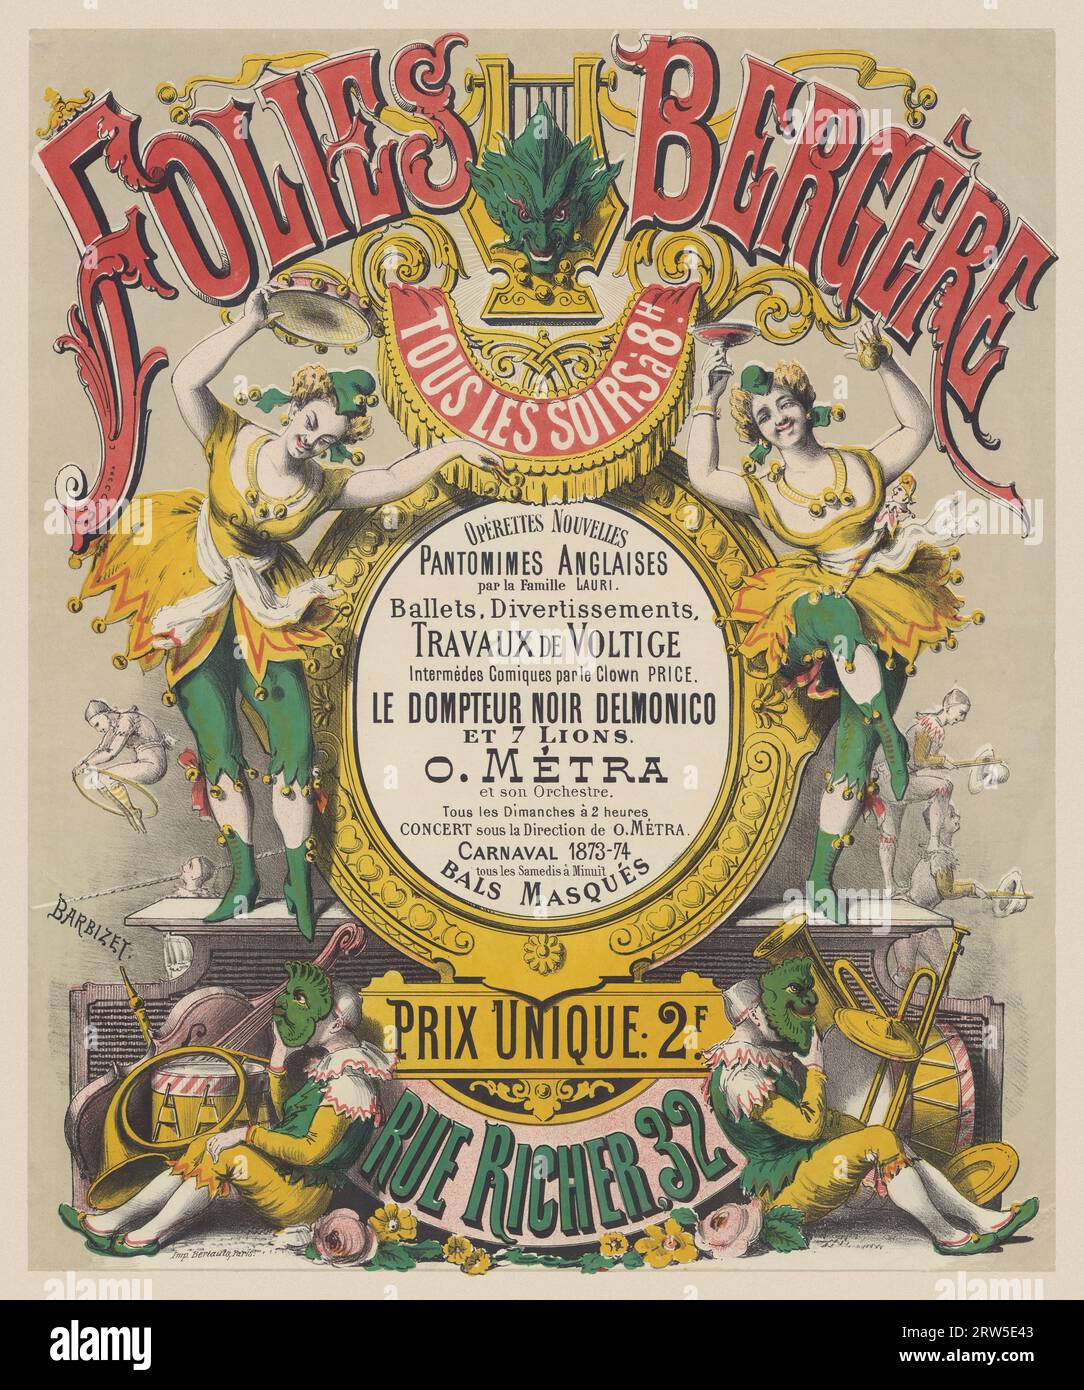 Folies-Bergère. Opérettes nouvelles, pantomimes anglaises par la famille Lauri di J. Barbizet (date sconosciute). Poster pubblicato nel 1874 in Francia. Foto Stock